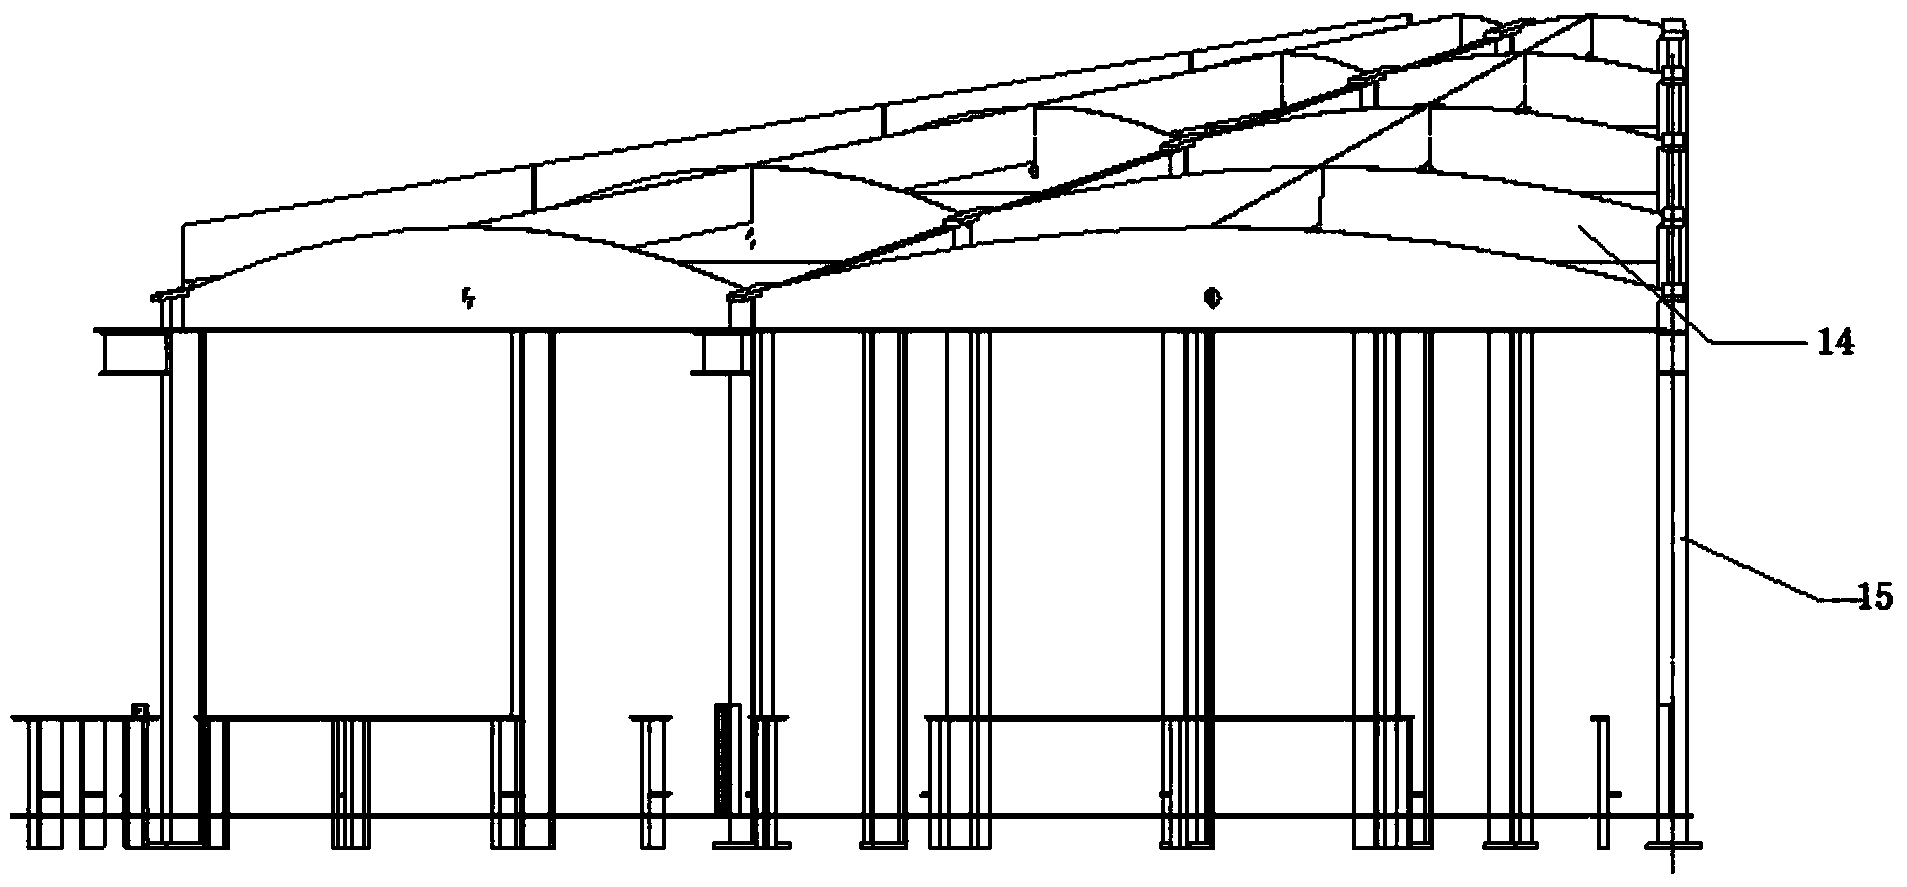 Conical barrel jig frame